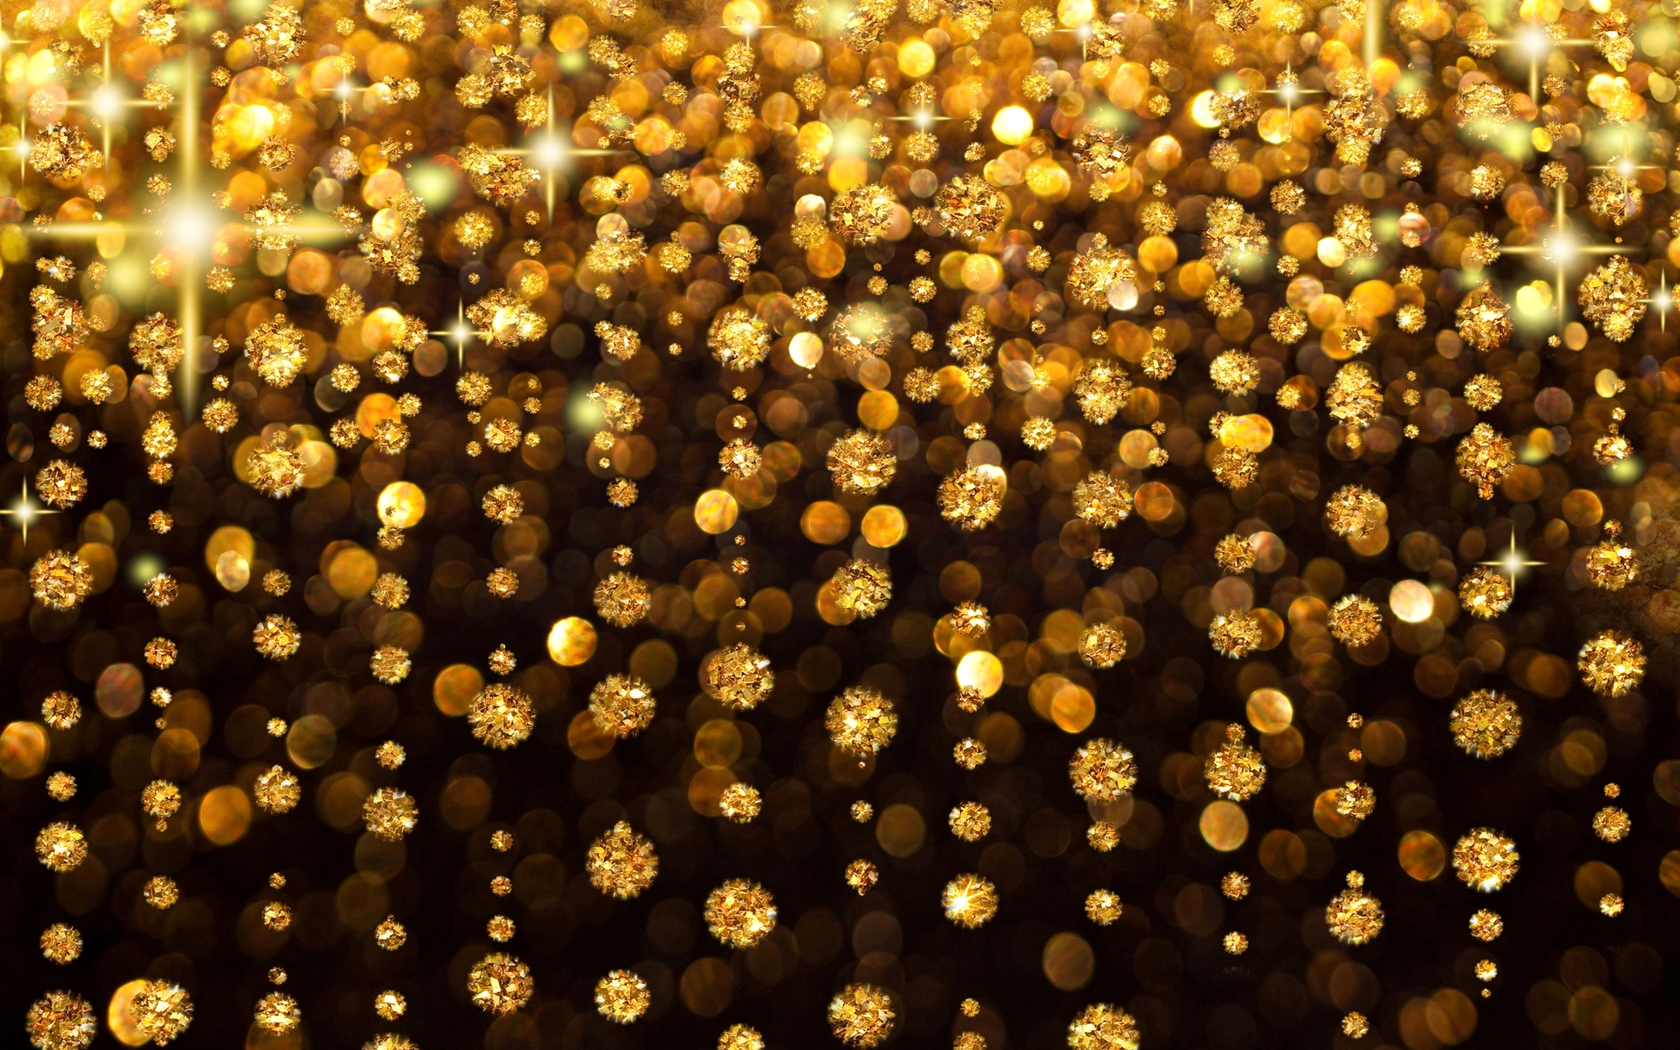 Gold glitter desktop wallpaper. Gold glitter de.